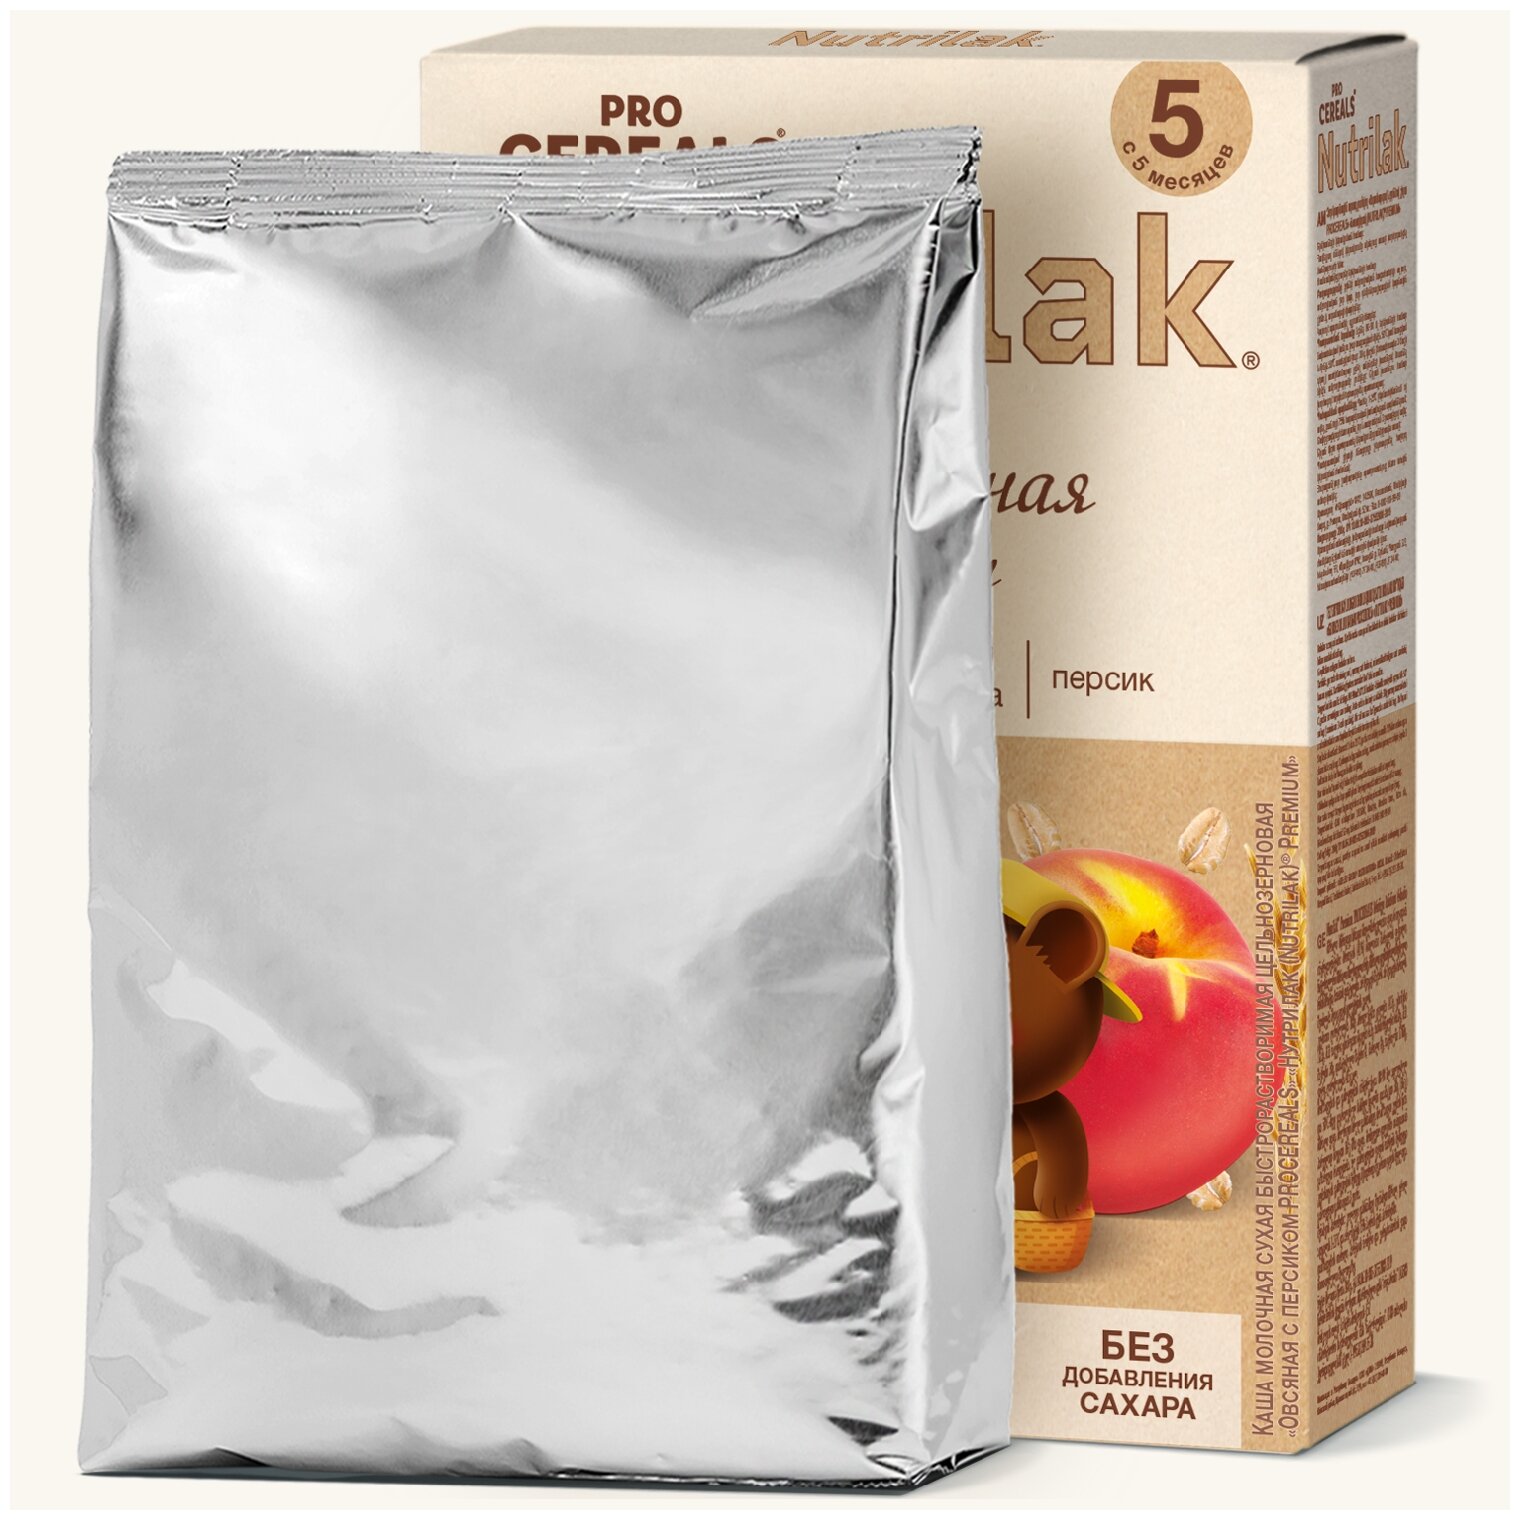 Каша овсяная с персиком Nutrilak Premium Pro Cereals цельнозерновая молочная, 200гр - фото №8